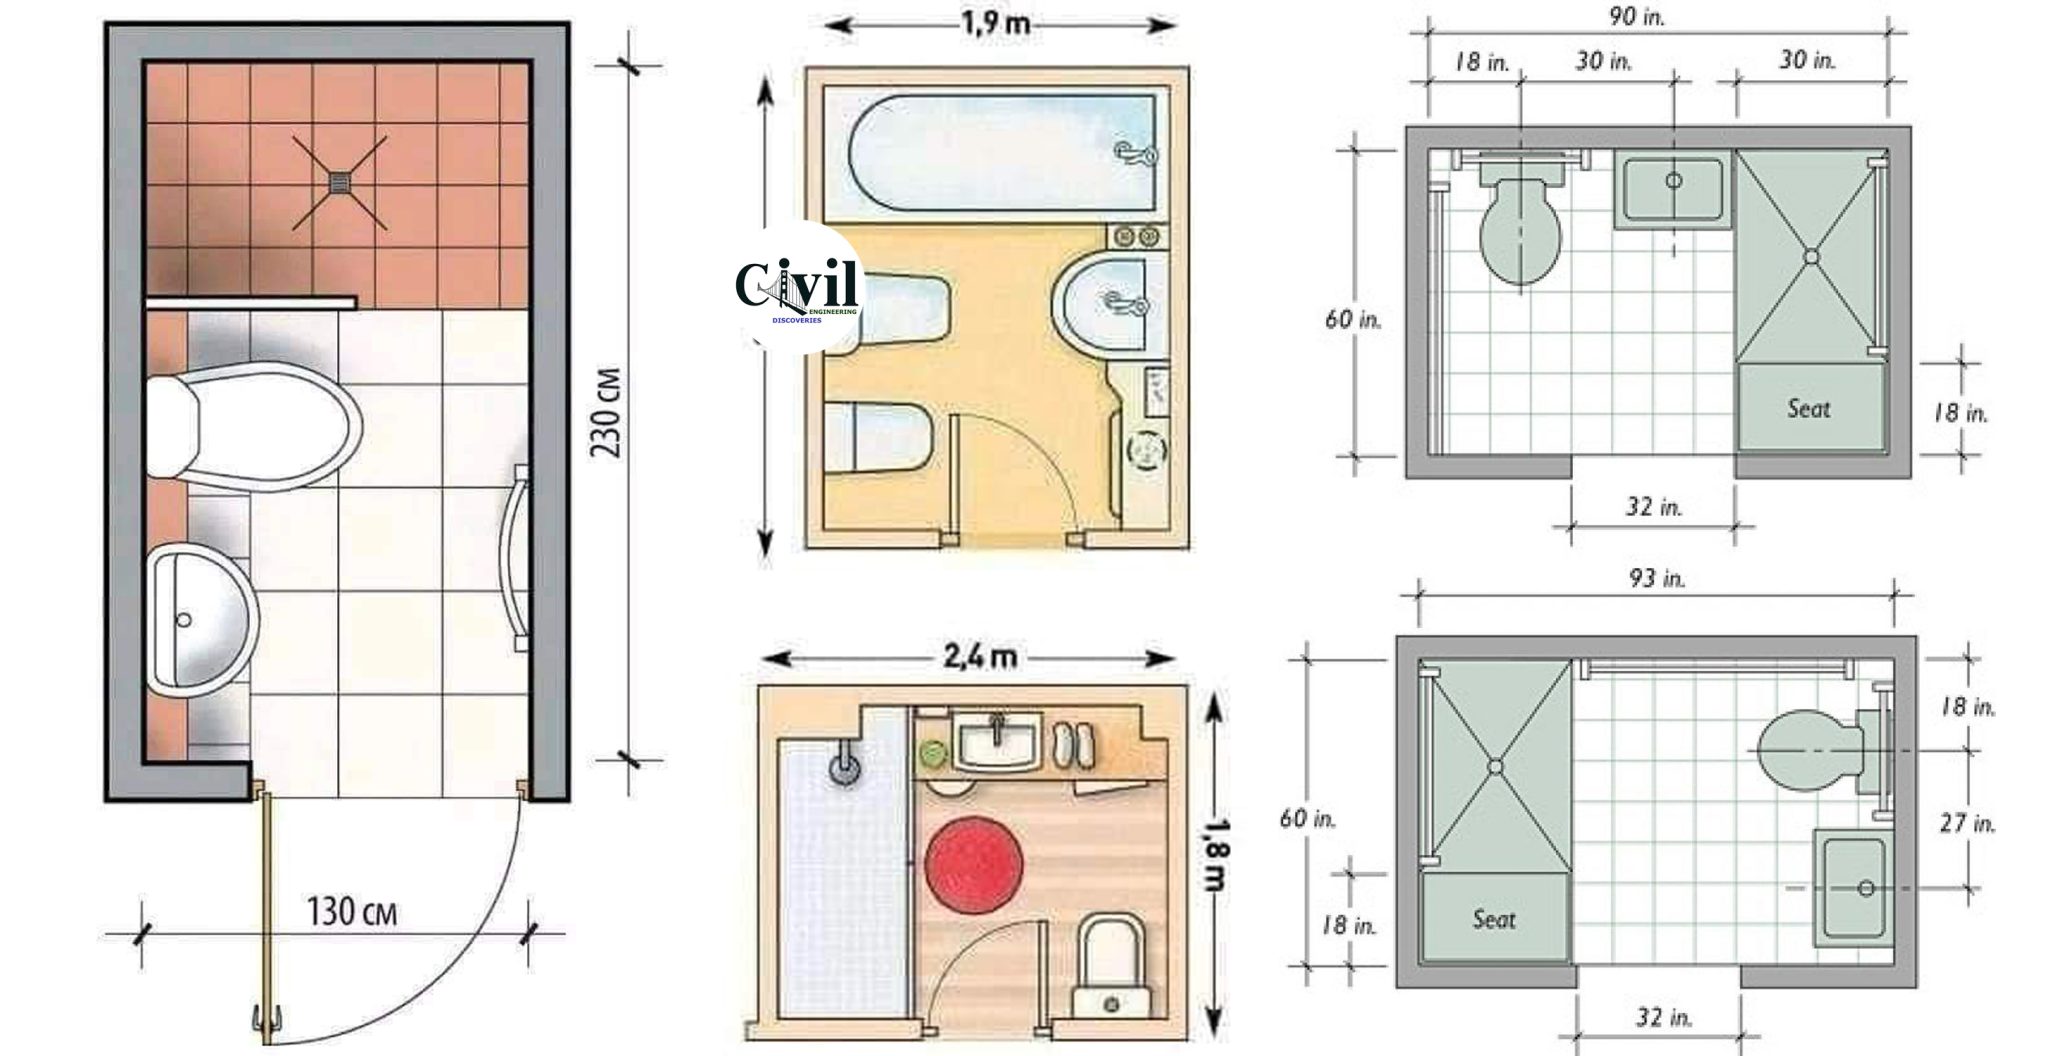 standard residential bathroom sink dimensions